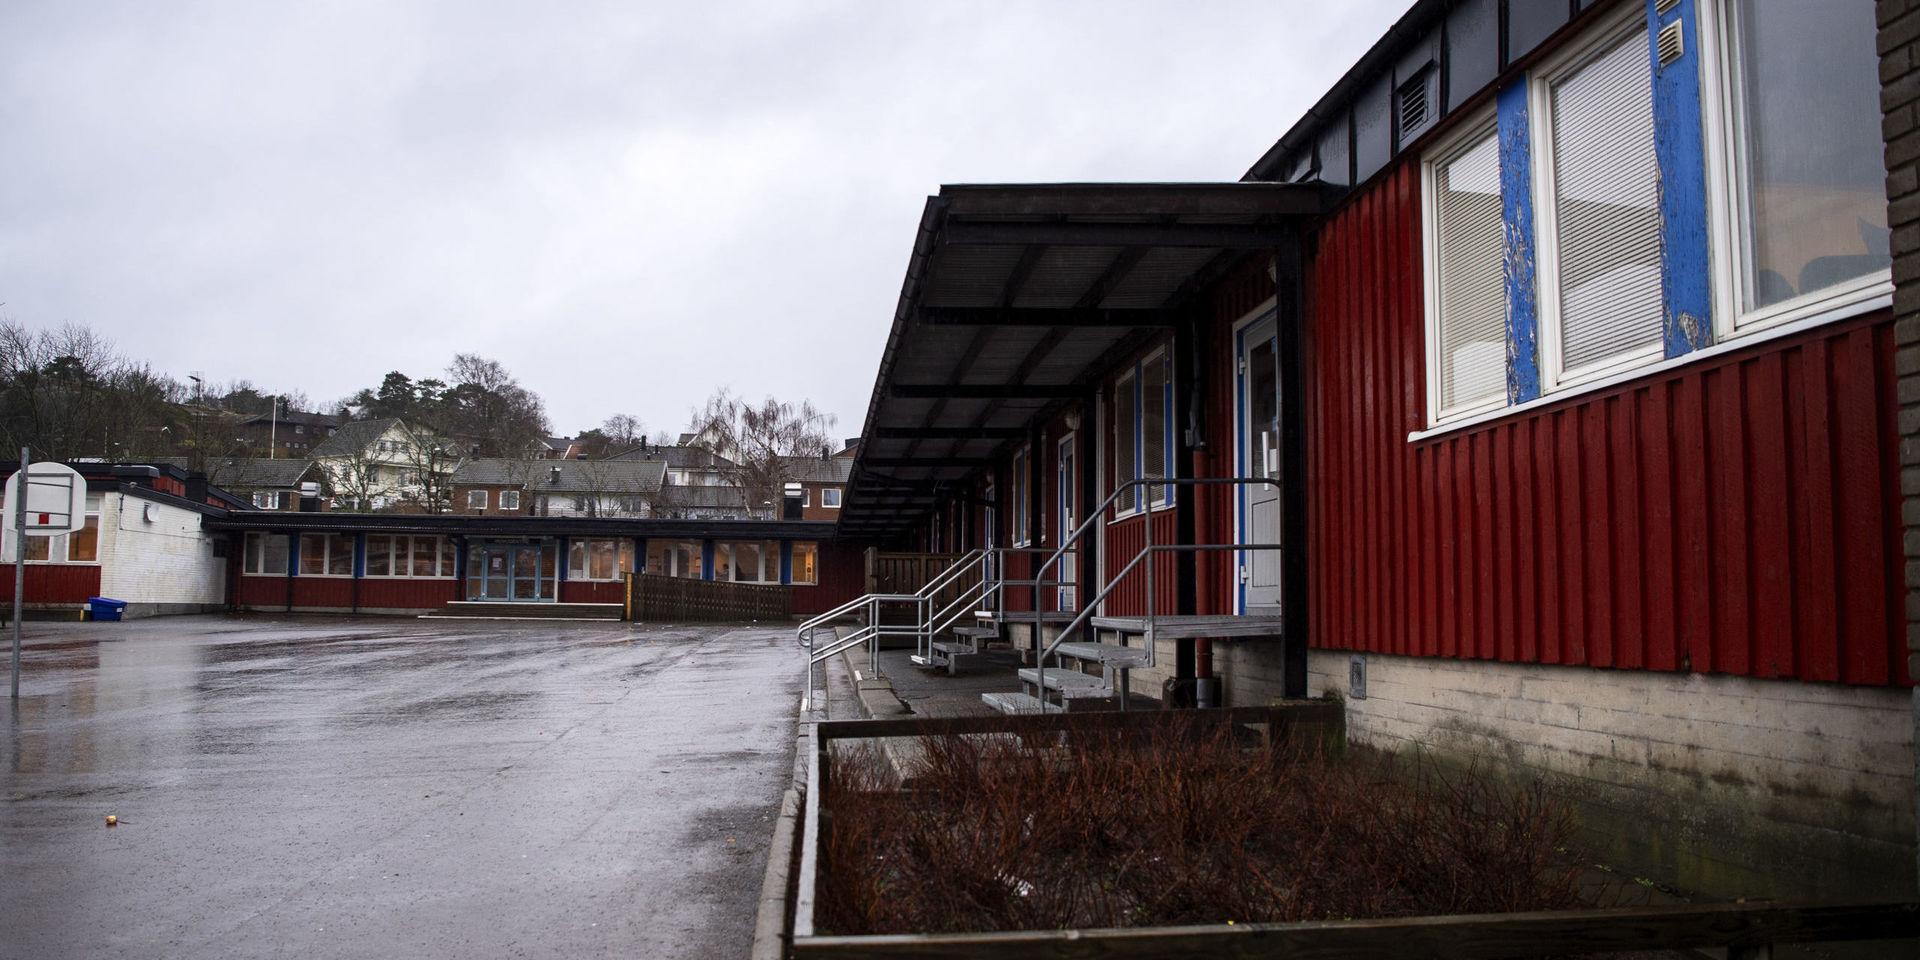 60-talsbyggnaden hade problem med mögel på 80-talet. Nu har nästa larm om miljön på Åkeredsskolan kommit.